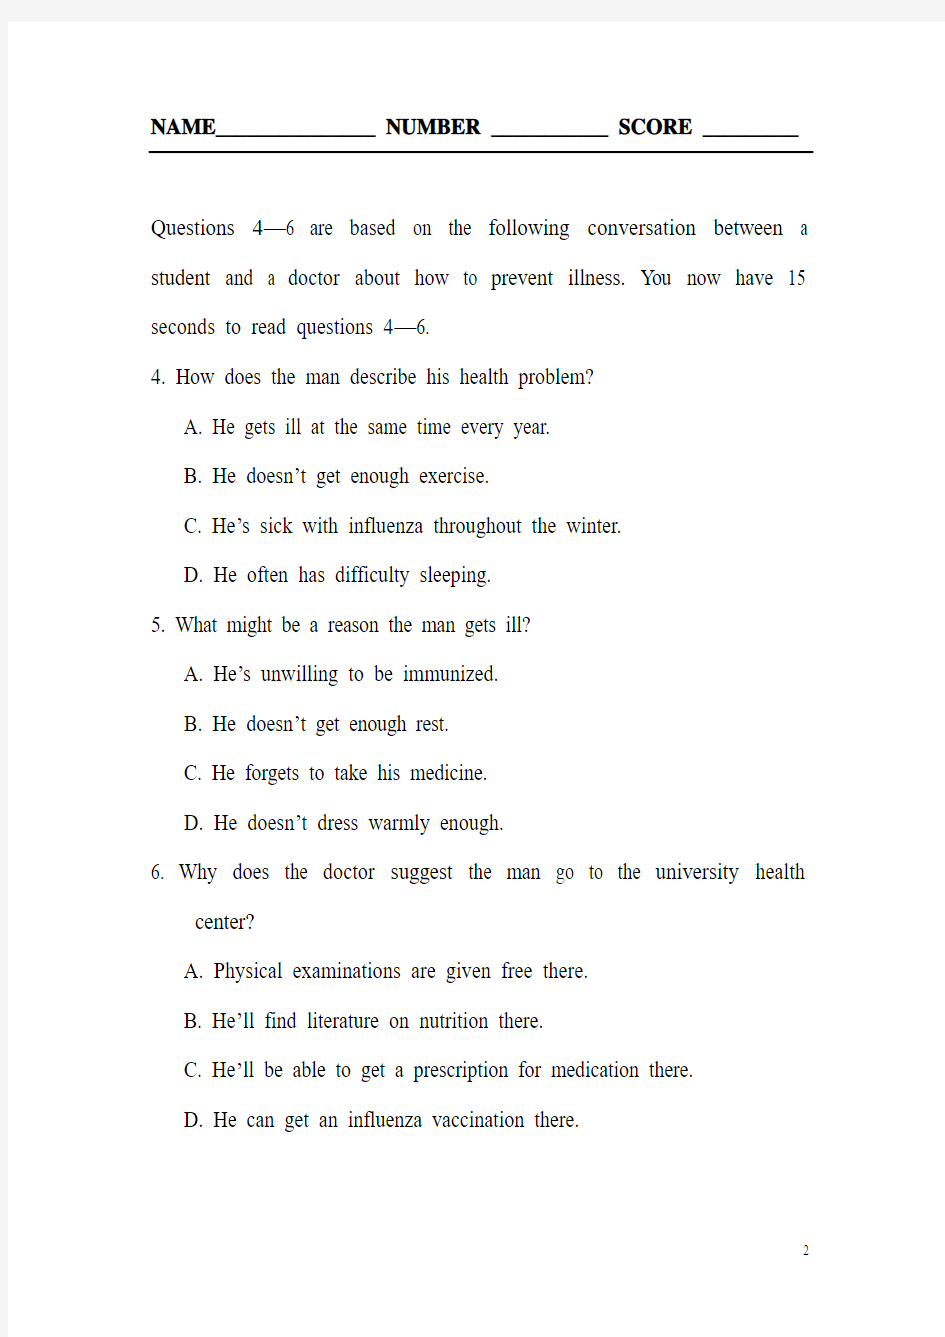 在职研究生英语试卷附有答题纸和答案